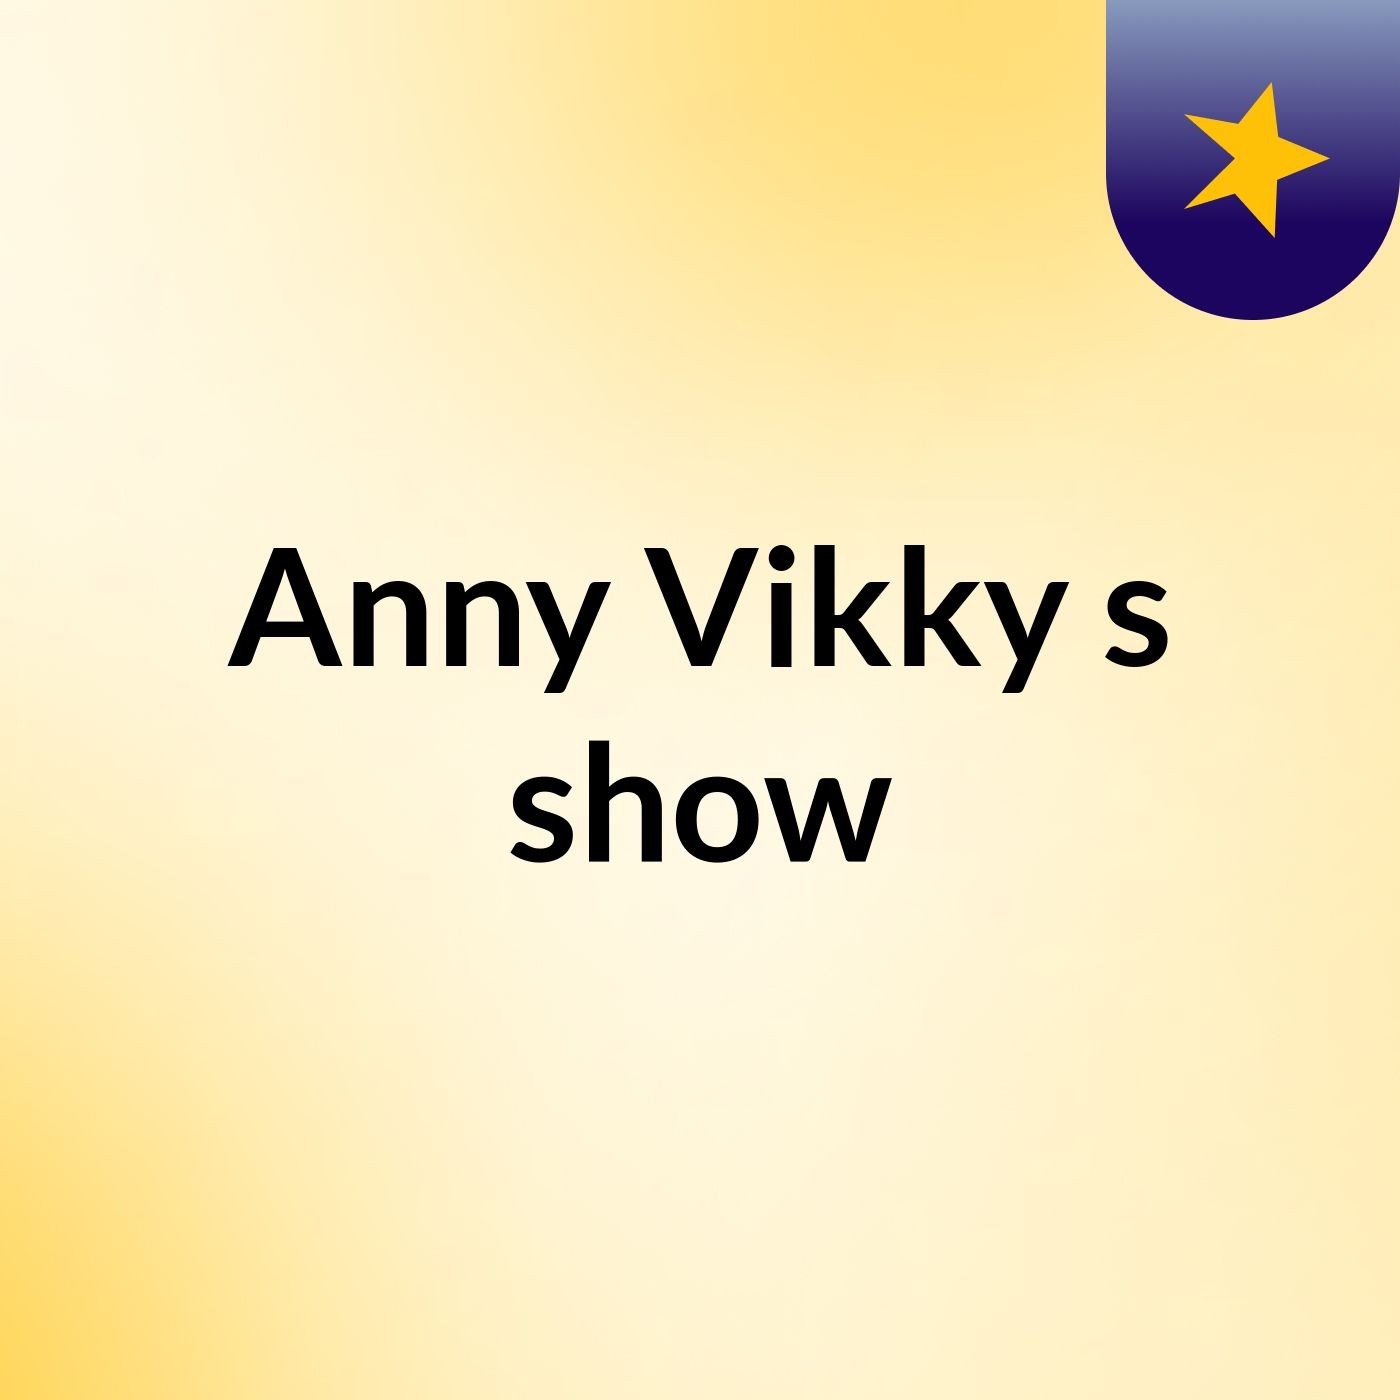 Anny Vikky's show